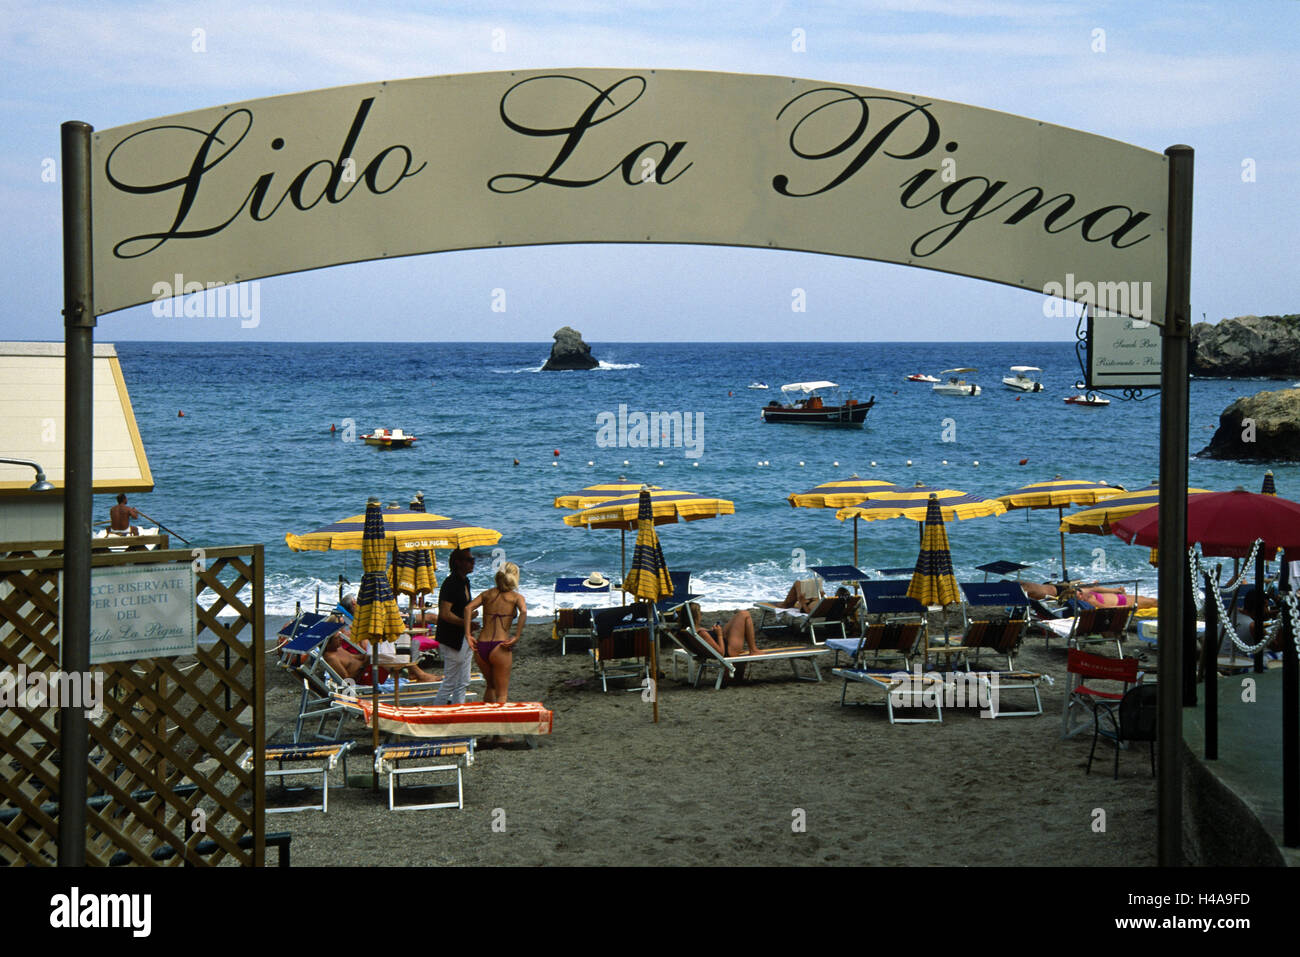 Italy, Sicily, Mazzaro, Lido La Pigna, beach, Stock Photo